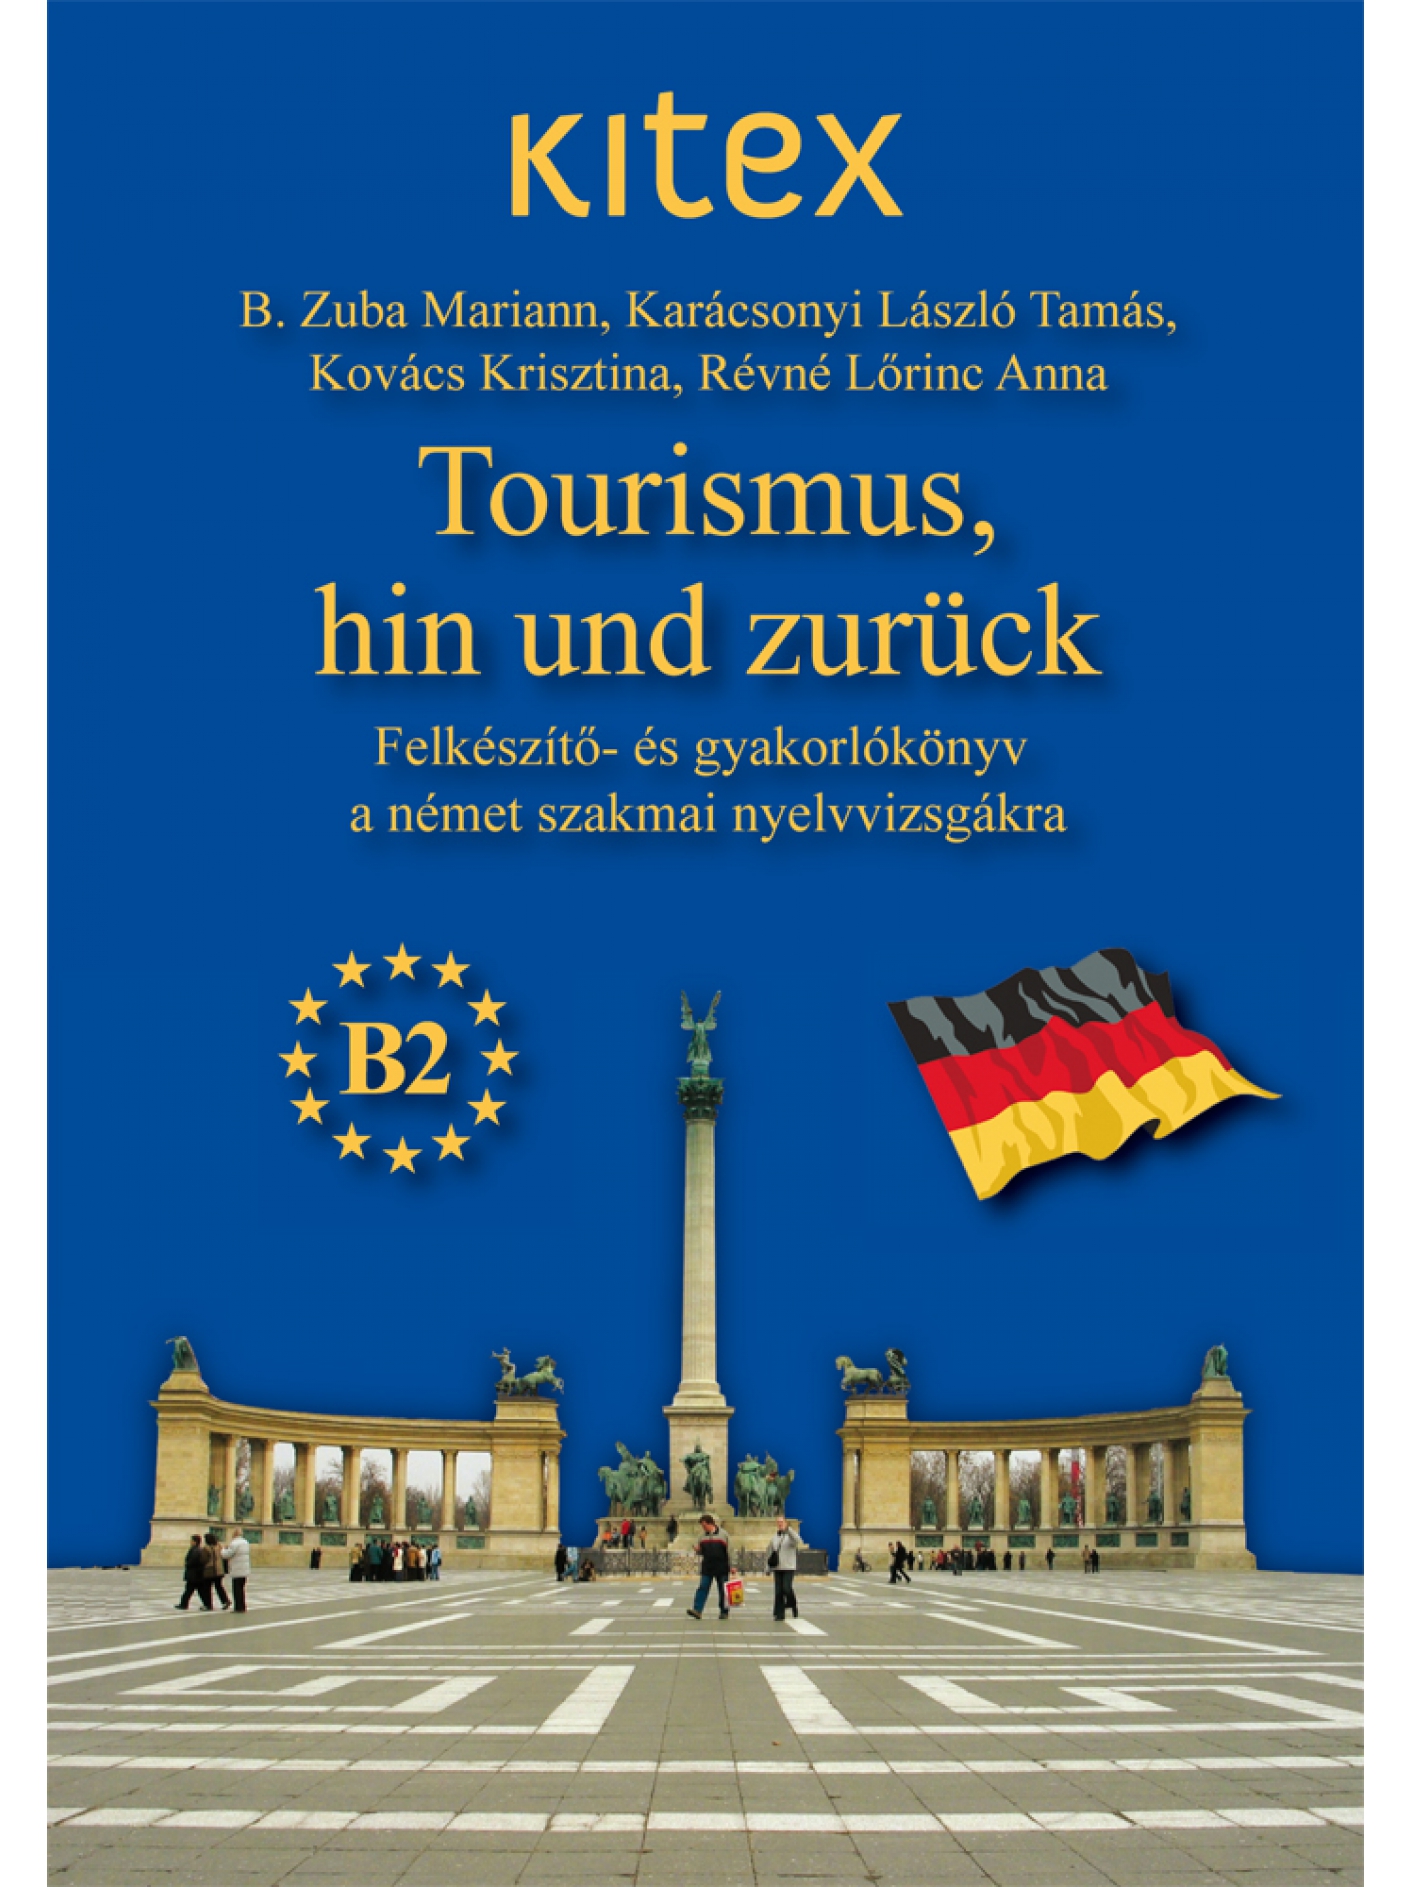 Tourismus, hin und zurück (CD-vel)  FIGYELEM!!! 2020. DECEMBERÉTŐL A KITEX SZAKMAI NYELVVIZSGA MEGSZŰNT 